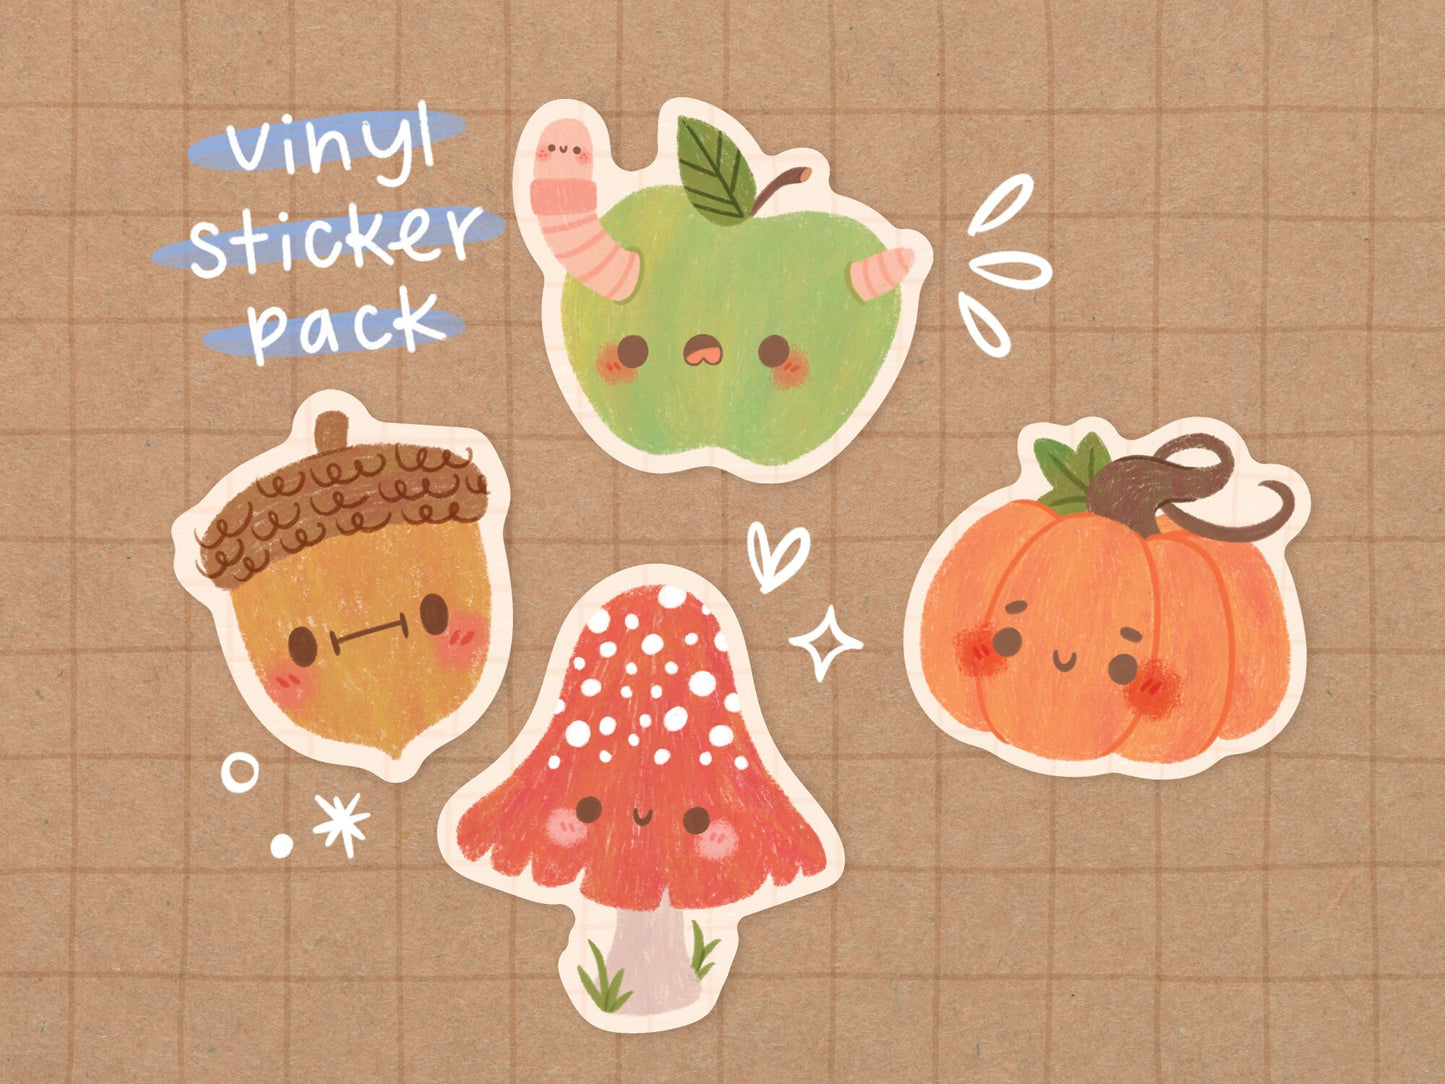 Autumn Pals Vinyl Sticker Pack A